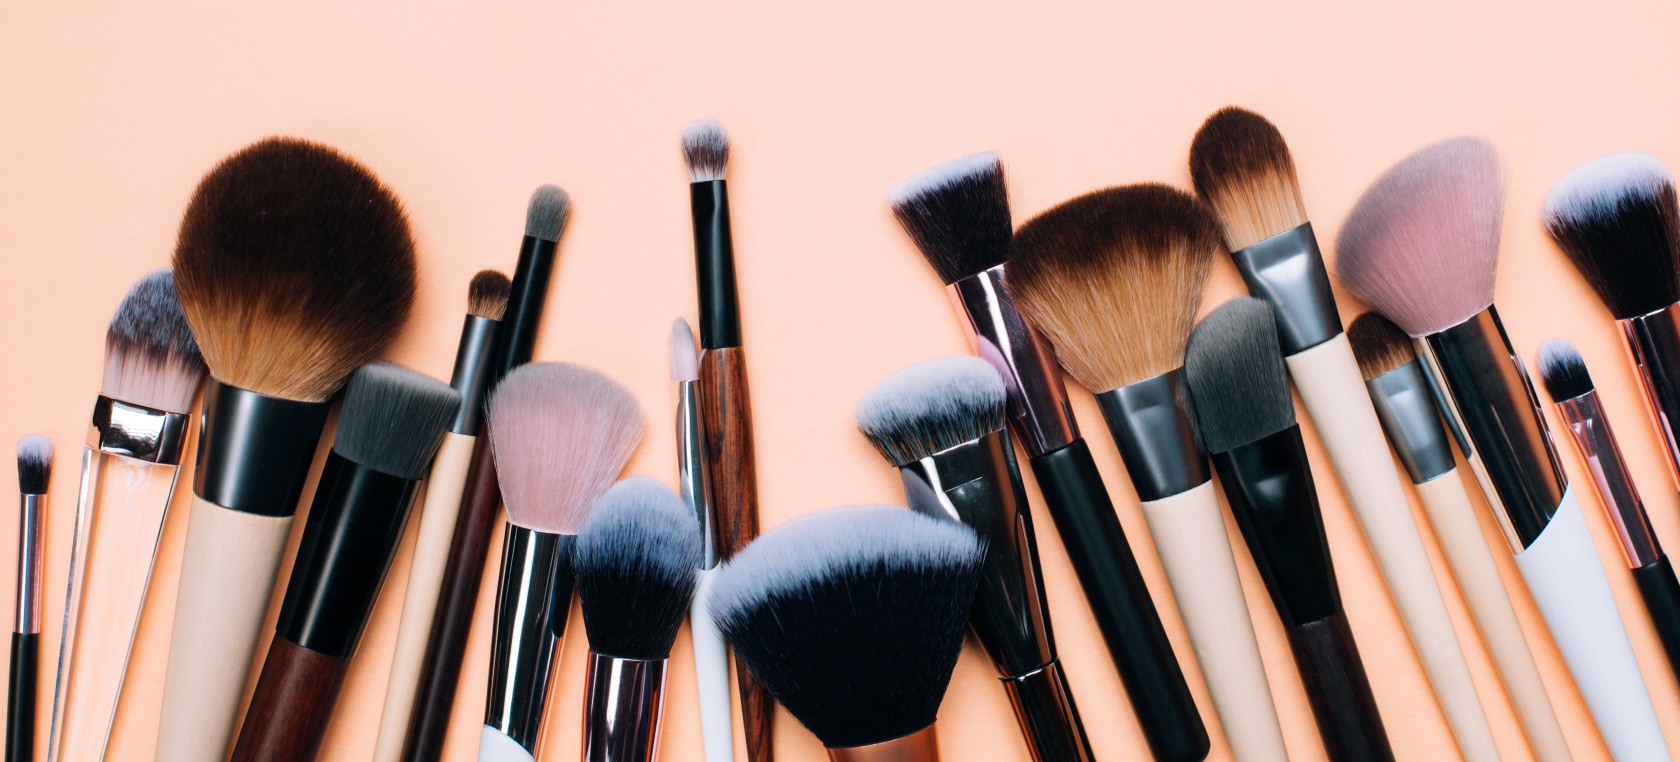 15 marcas de maquillaje que no testan con animales en 2021